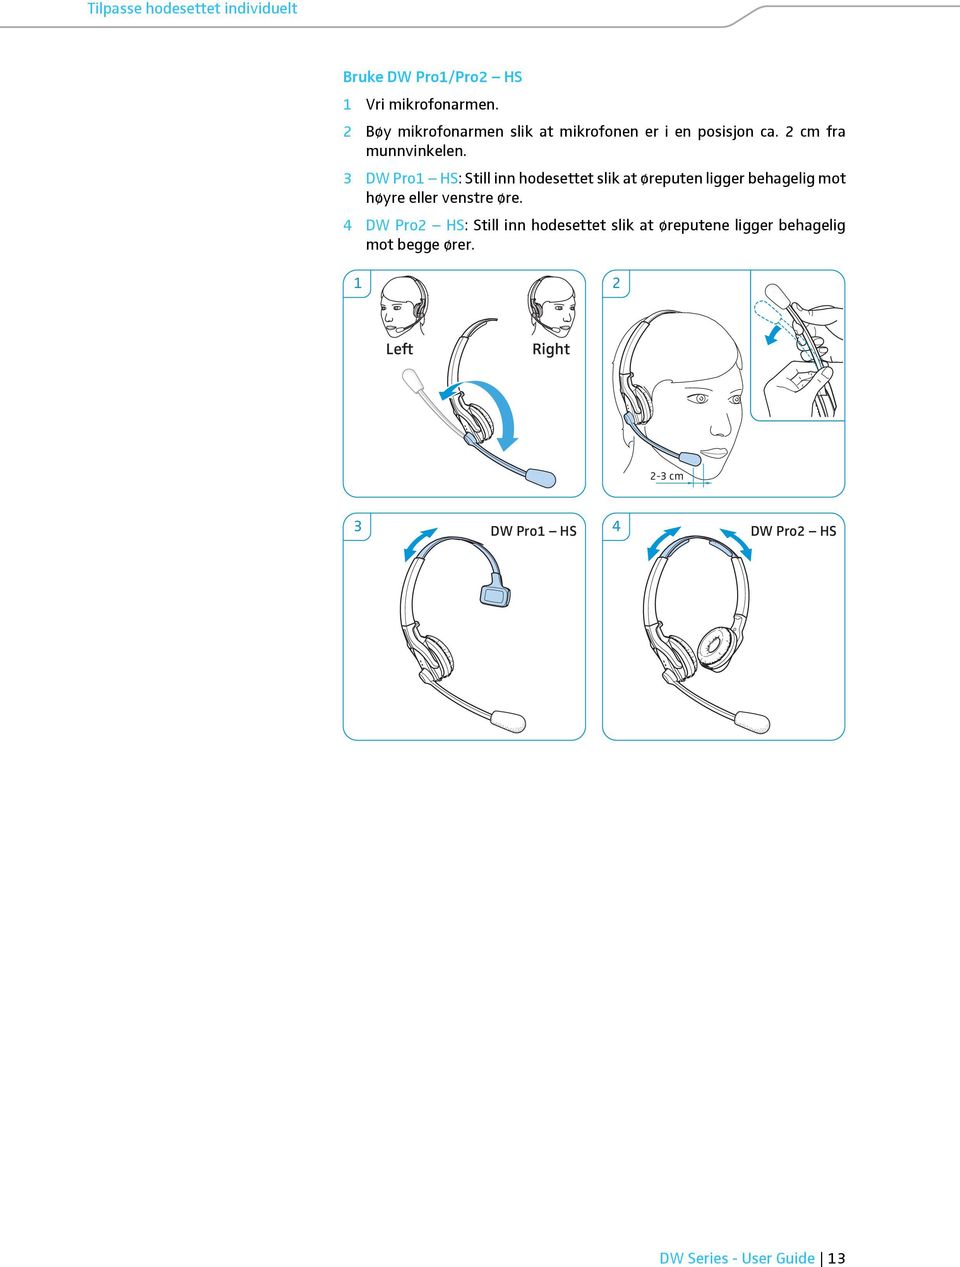 3 DW Pro1 HS: Still inn hodesettet slik at øreputen ligger behagelig mot høyre eller venstre øre.